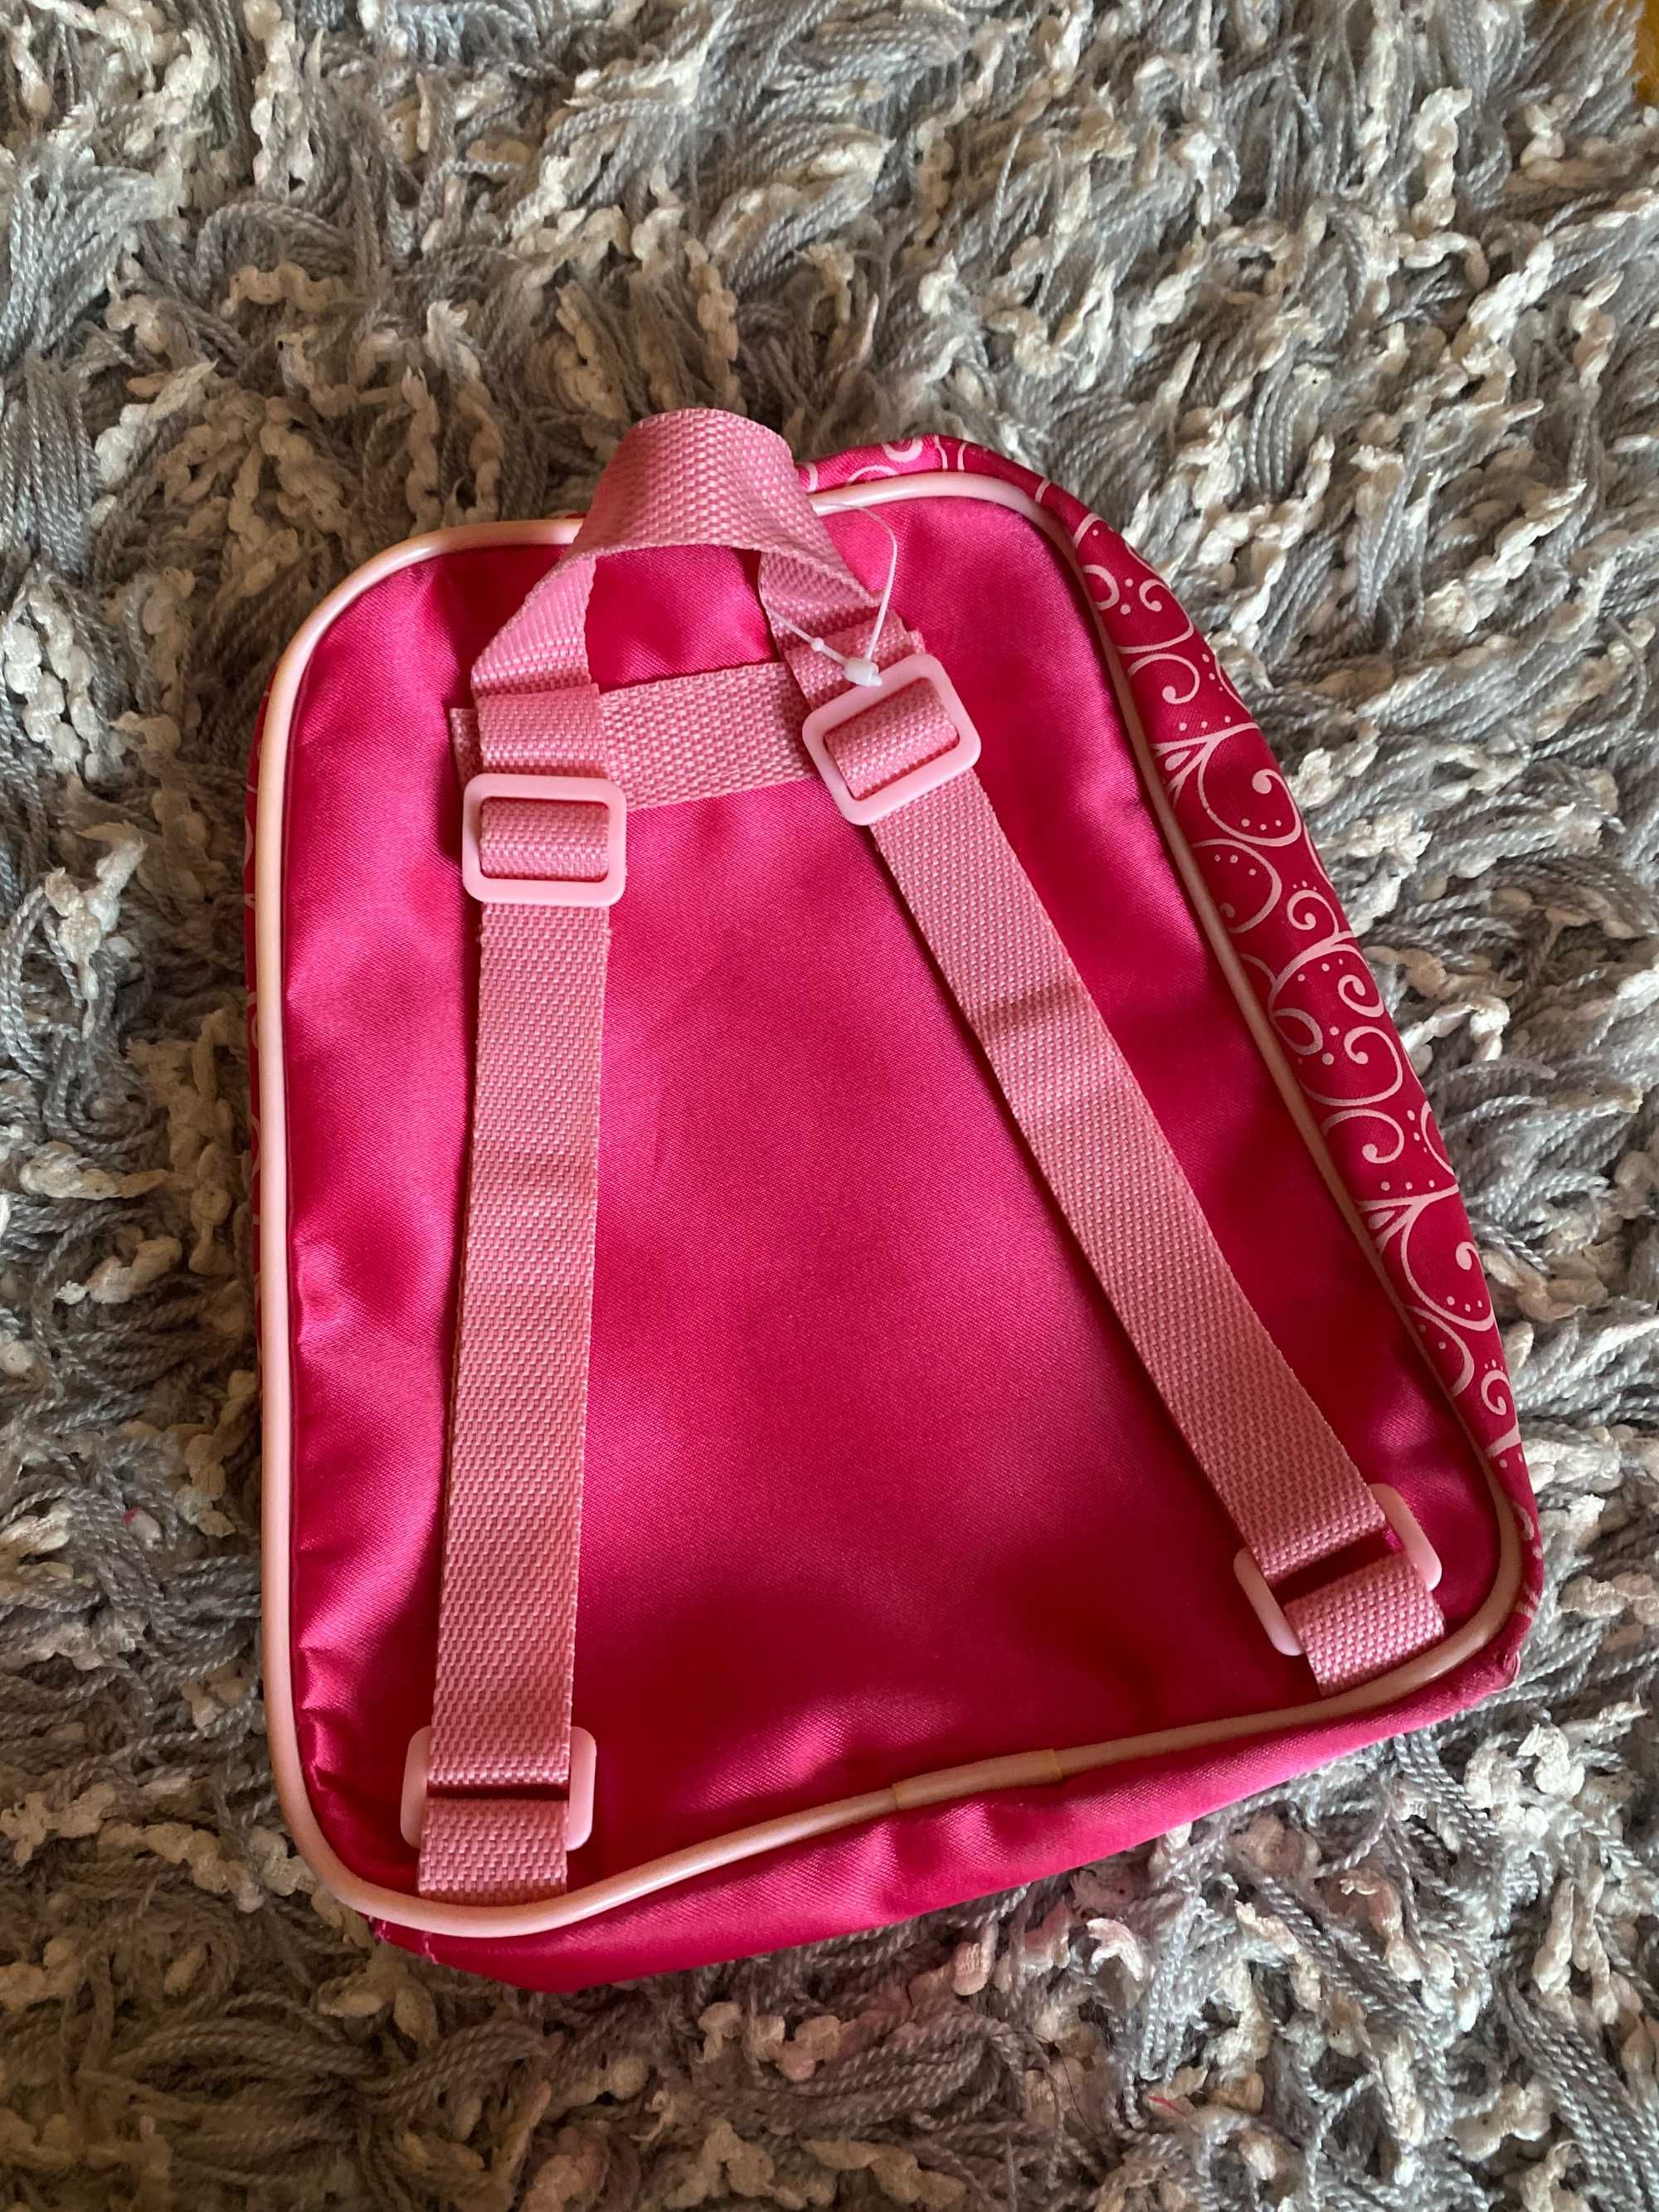 Barbie рюкзак для девочки Барби Розелл принцесса острова